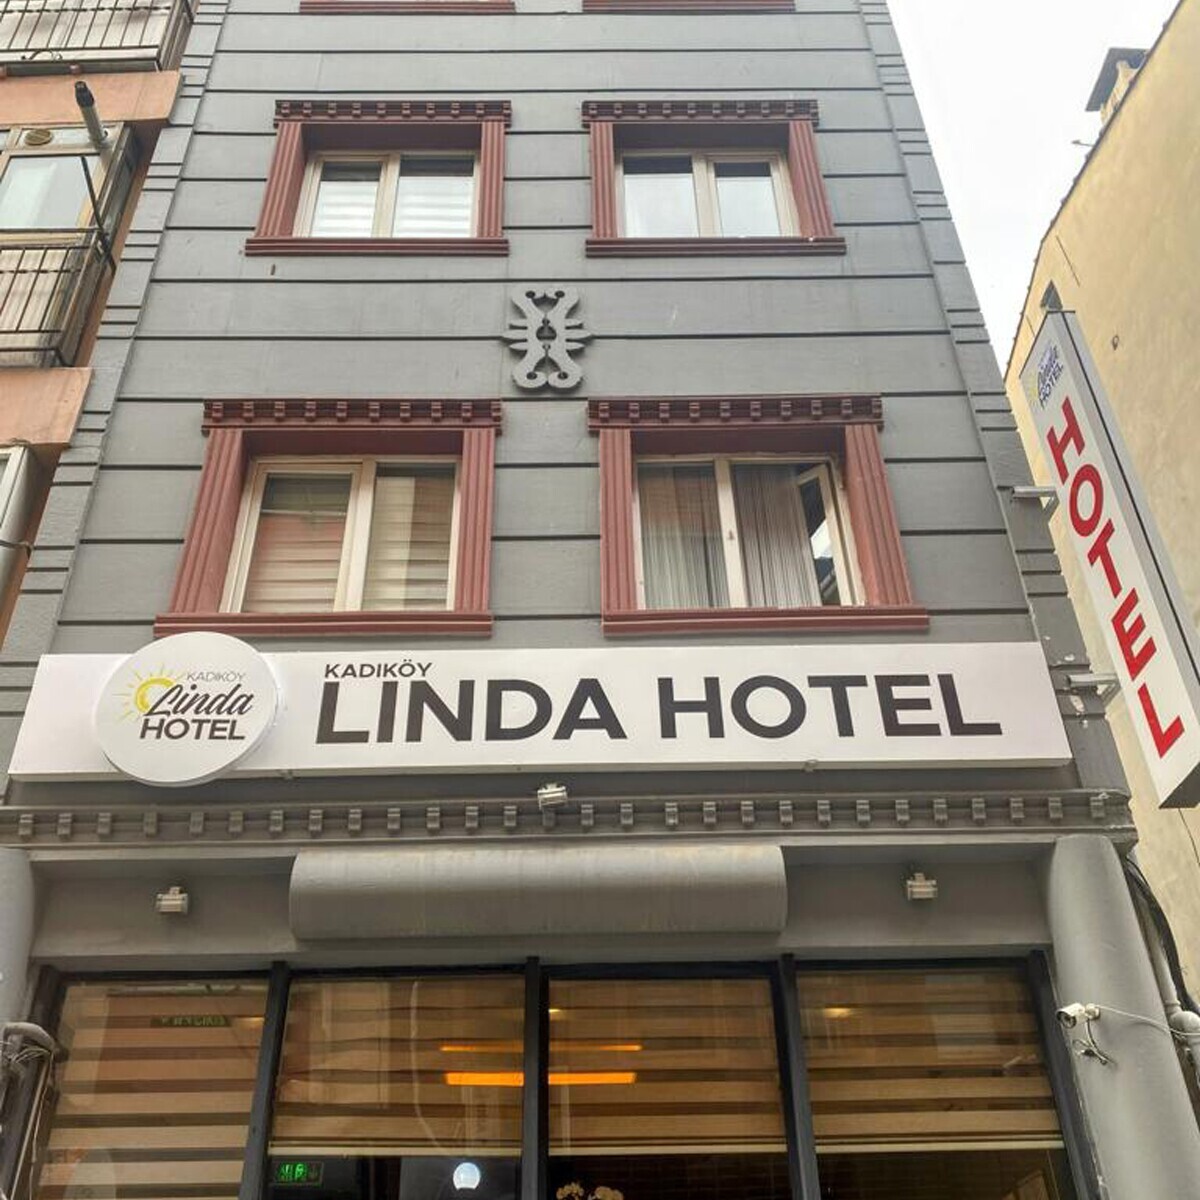 Linda Hotel Kadıköy'de Çift Kişilik Konaklama Seçenekleri